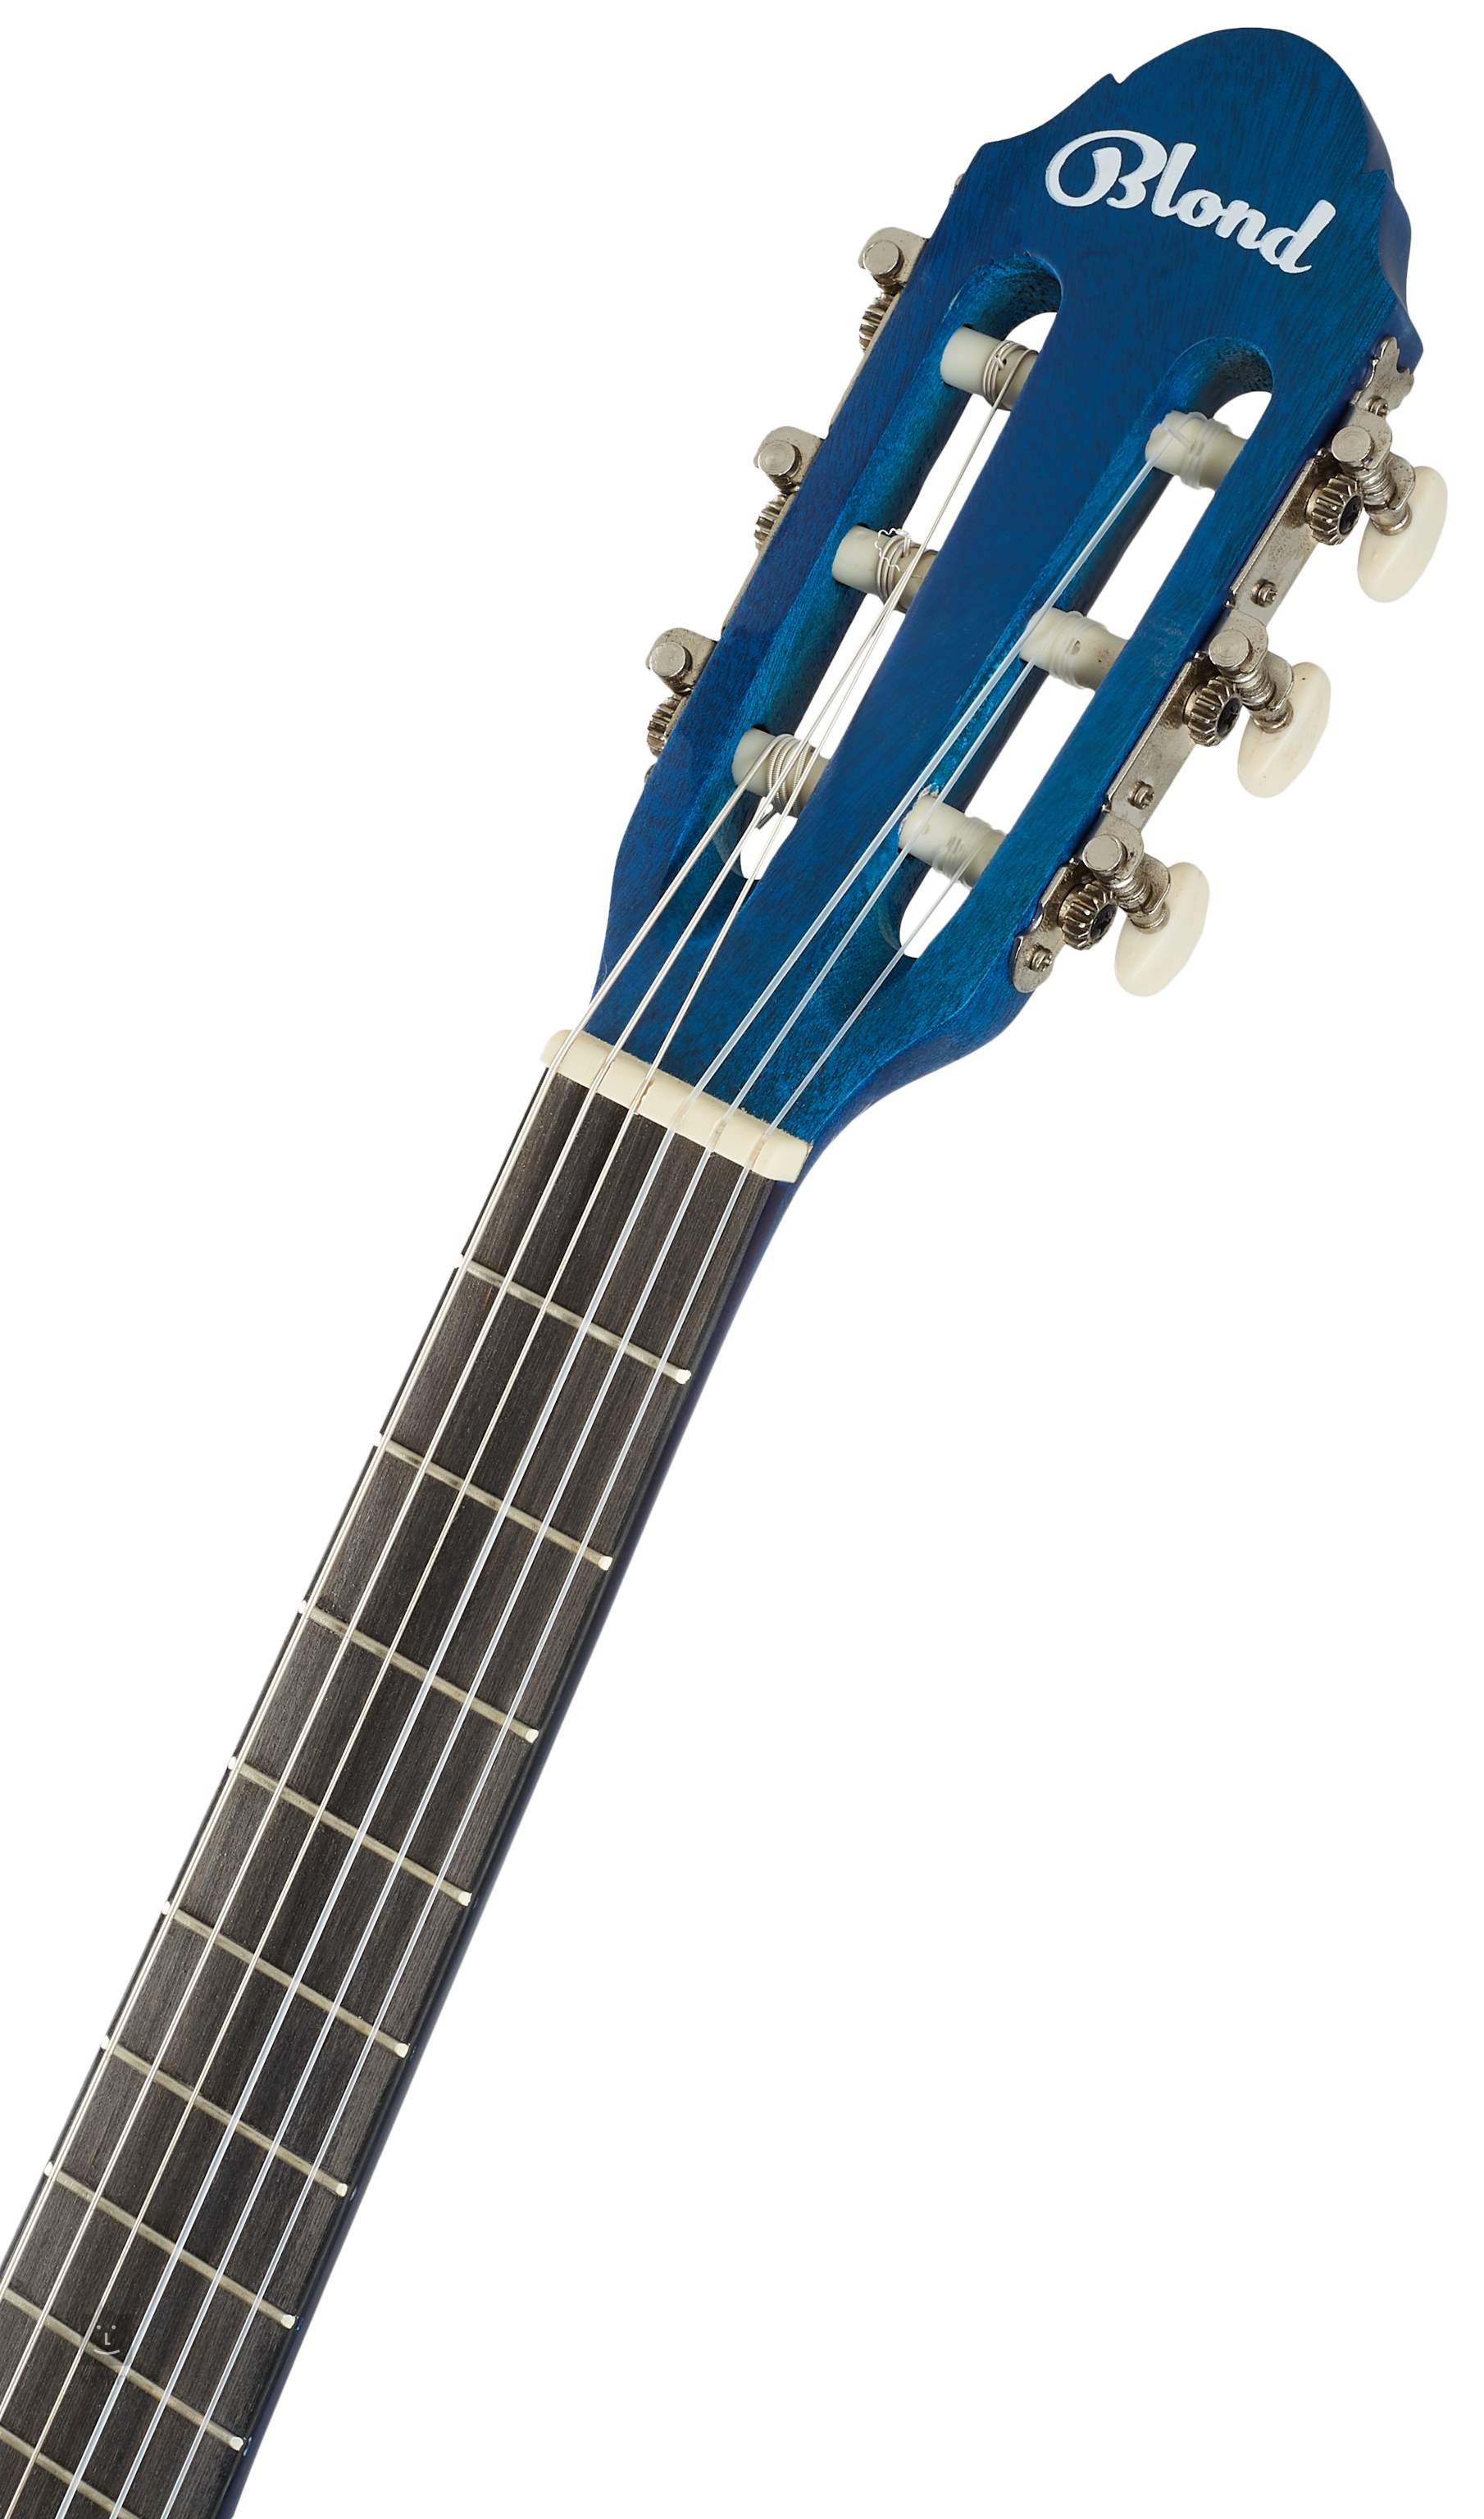 Geleend Glimmend Duur BLOND CL-12 BL Klassieke gitaar voor kinderen